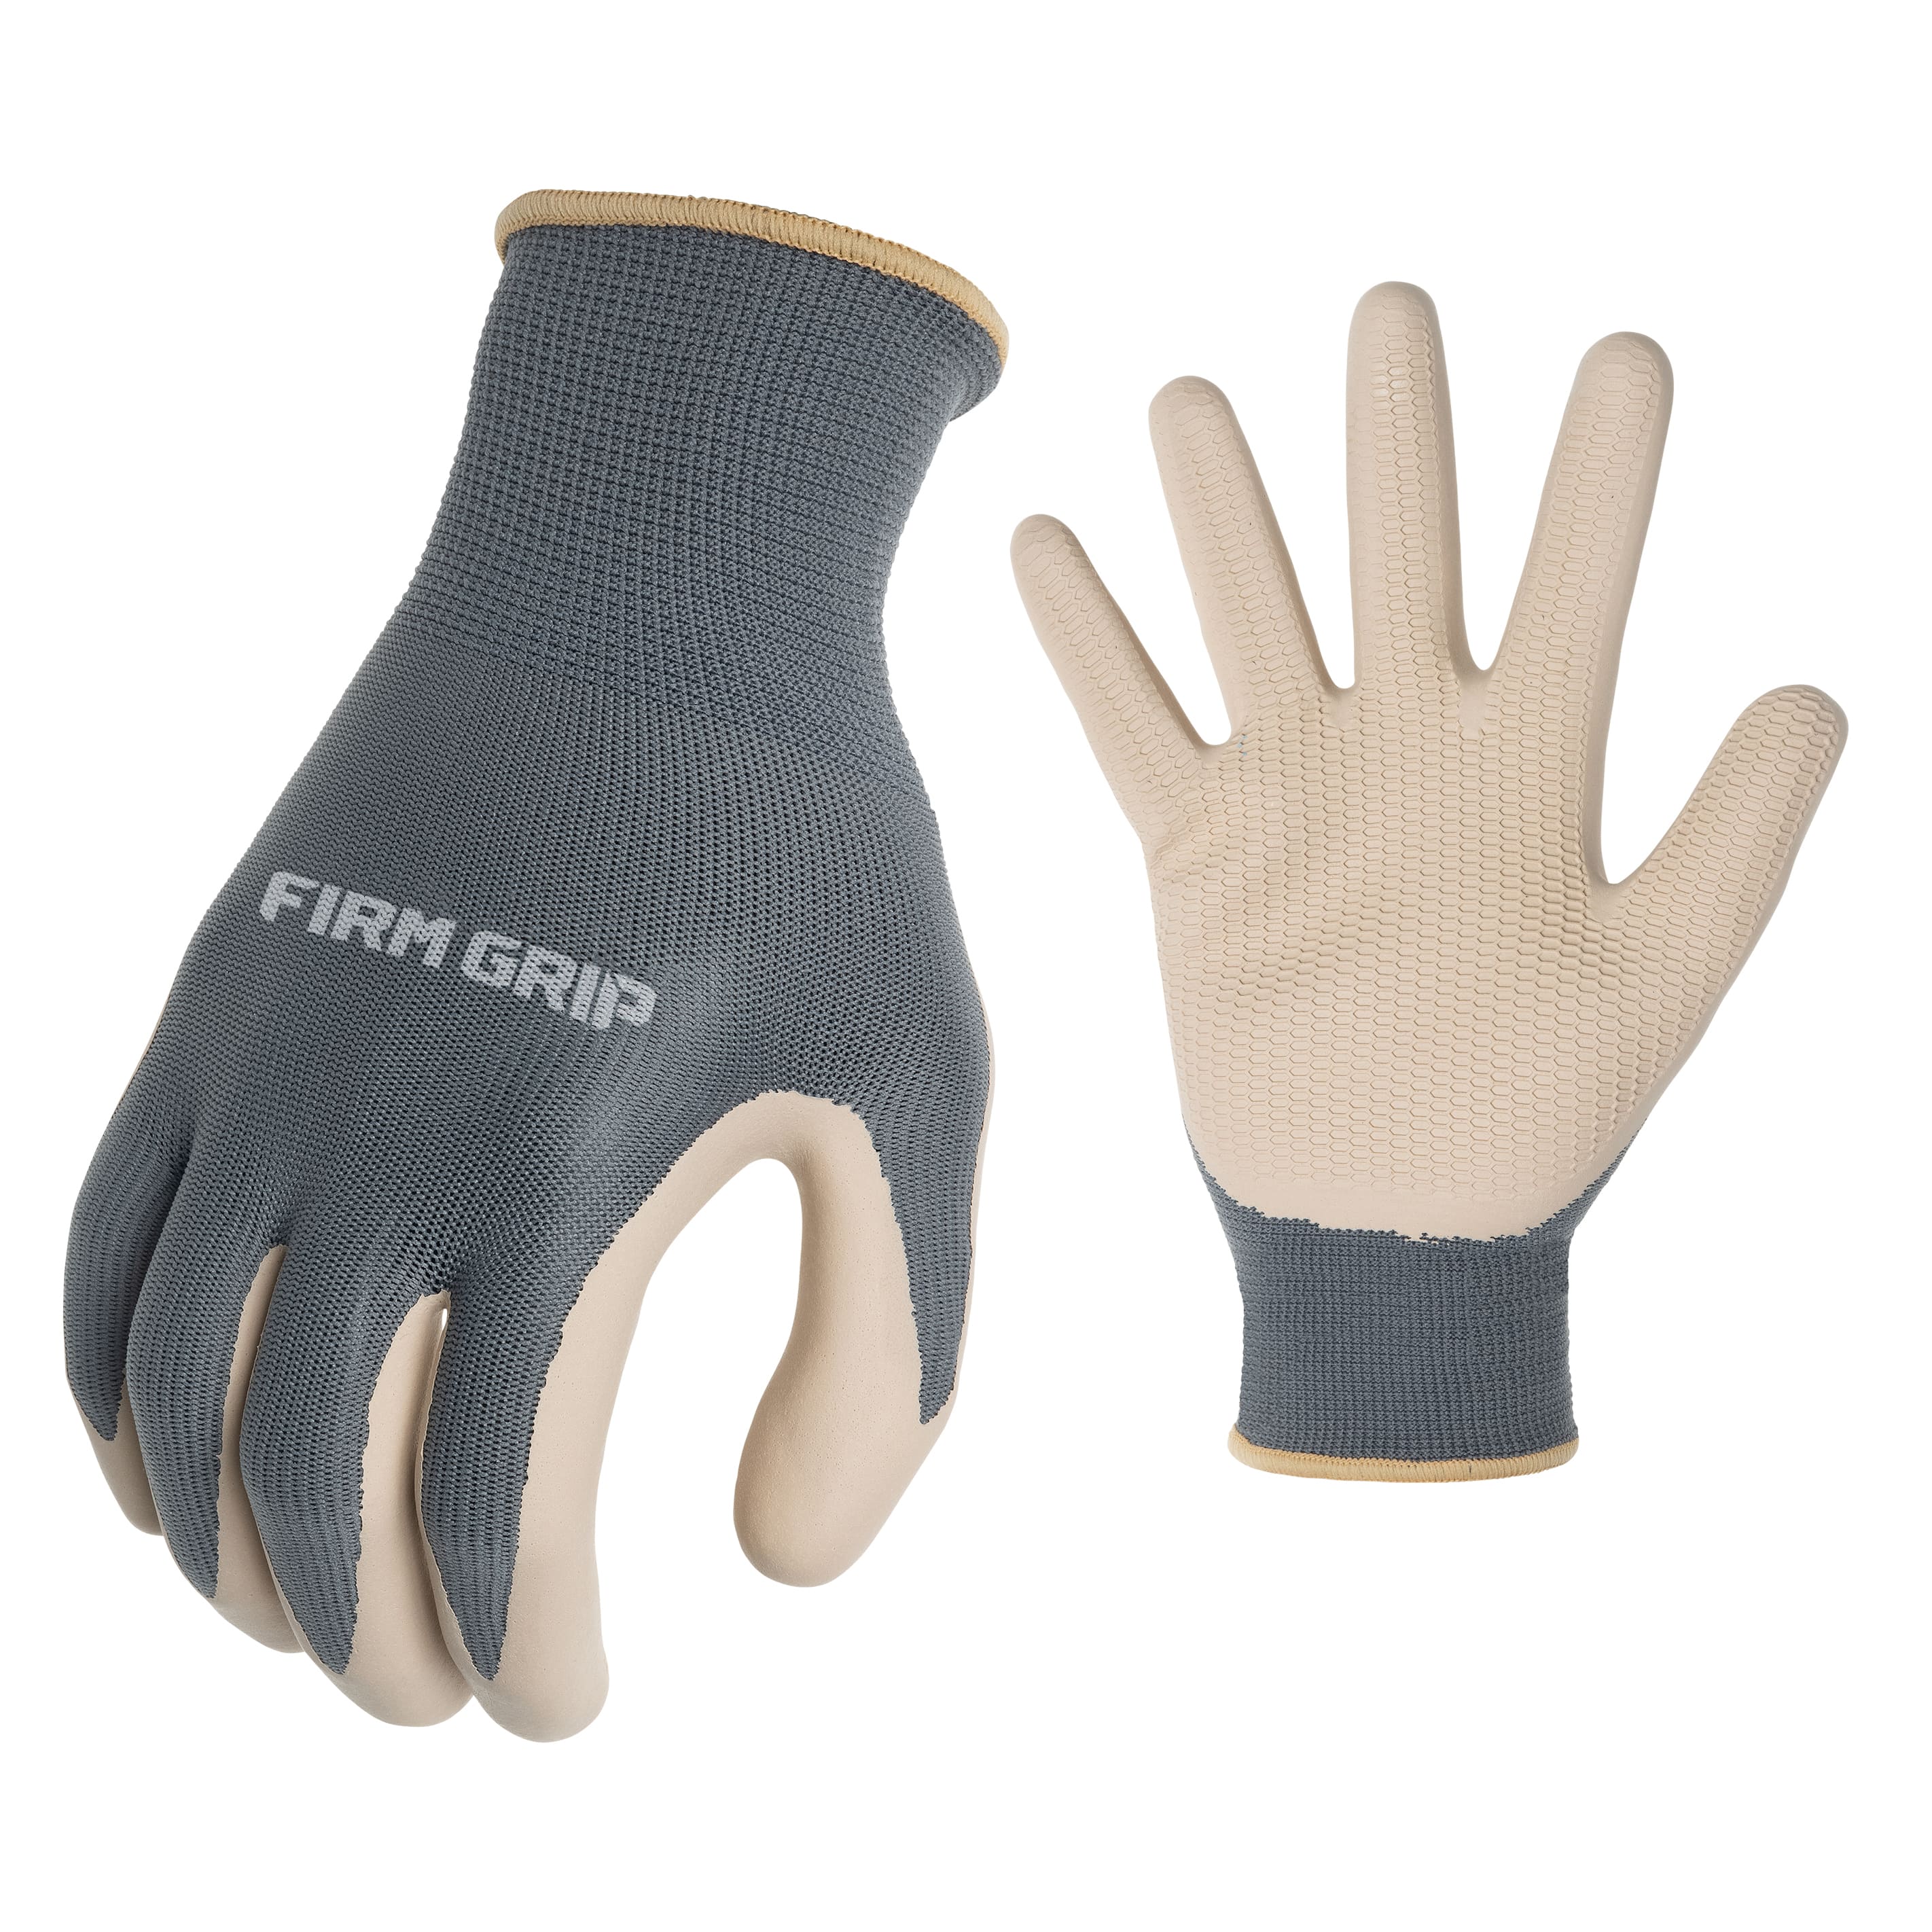 Firm Grip, Accessories, Firm Grip Work Gloves